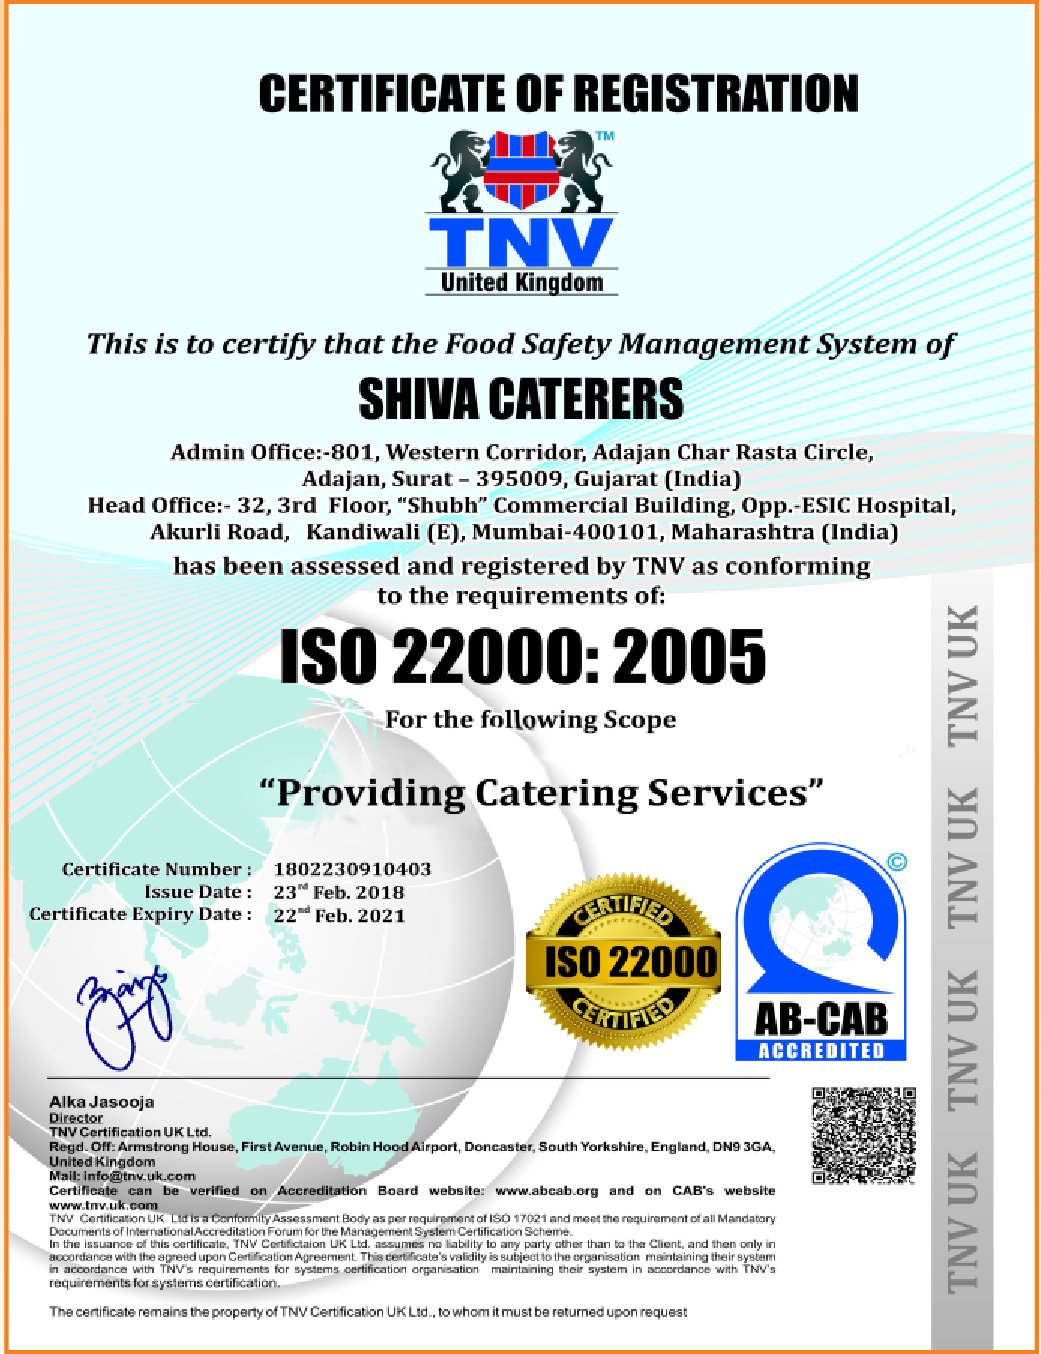  Shiva Cateres - ISO 22000:2005 